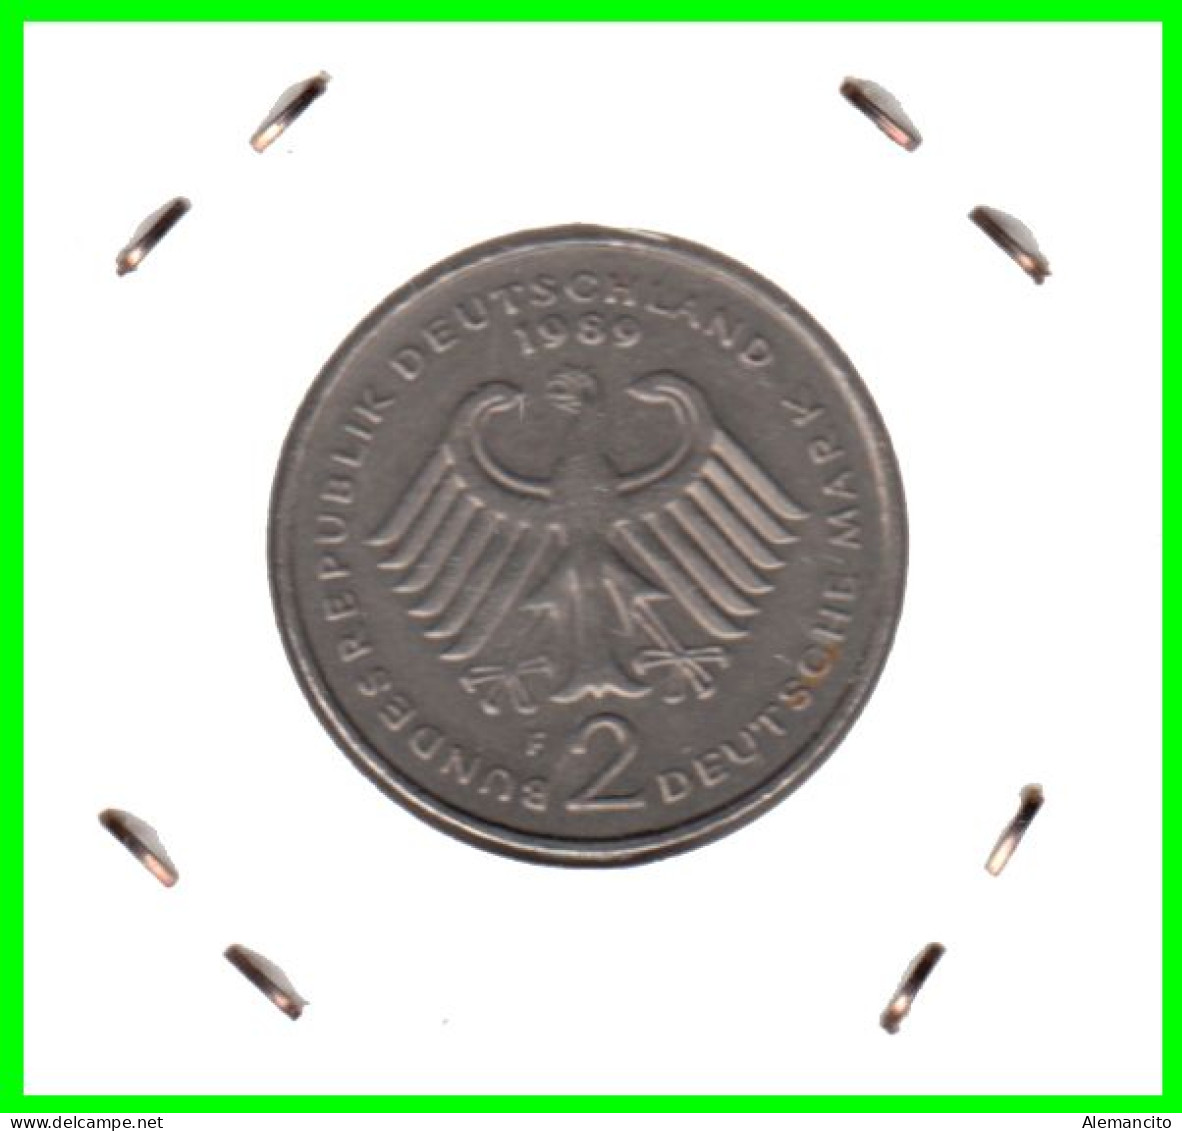 COIN ALEMANIA ( GERMANY ) MONEDA DE 2.00 DM AÑO 1989 CECA-F - STTUCART -LUDWIG ERHARD - NÍQUEL - 2 Marcos